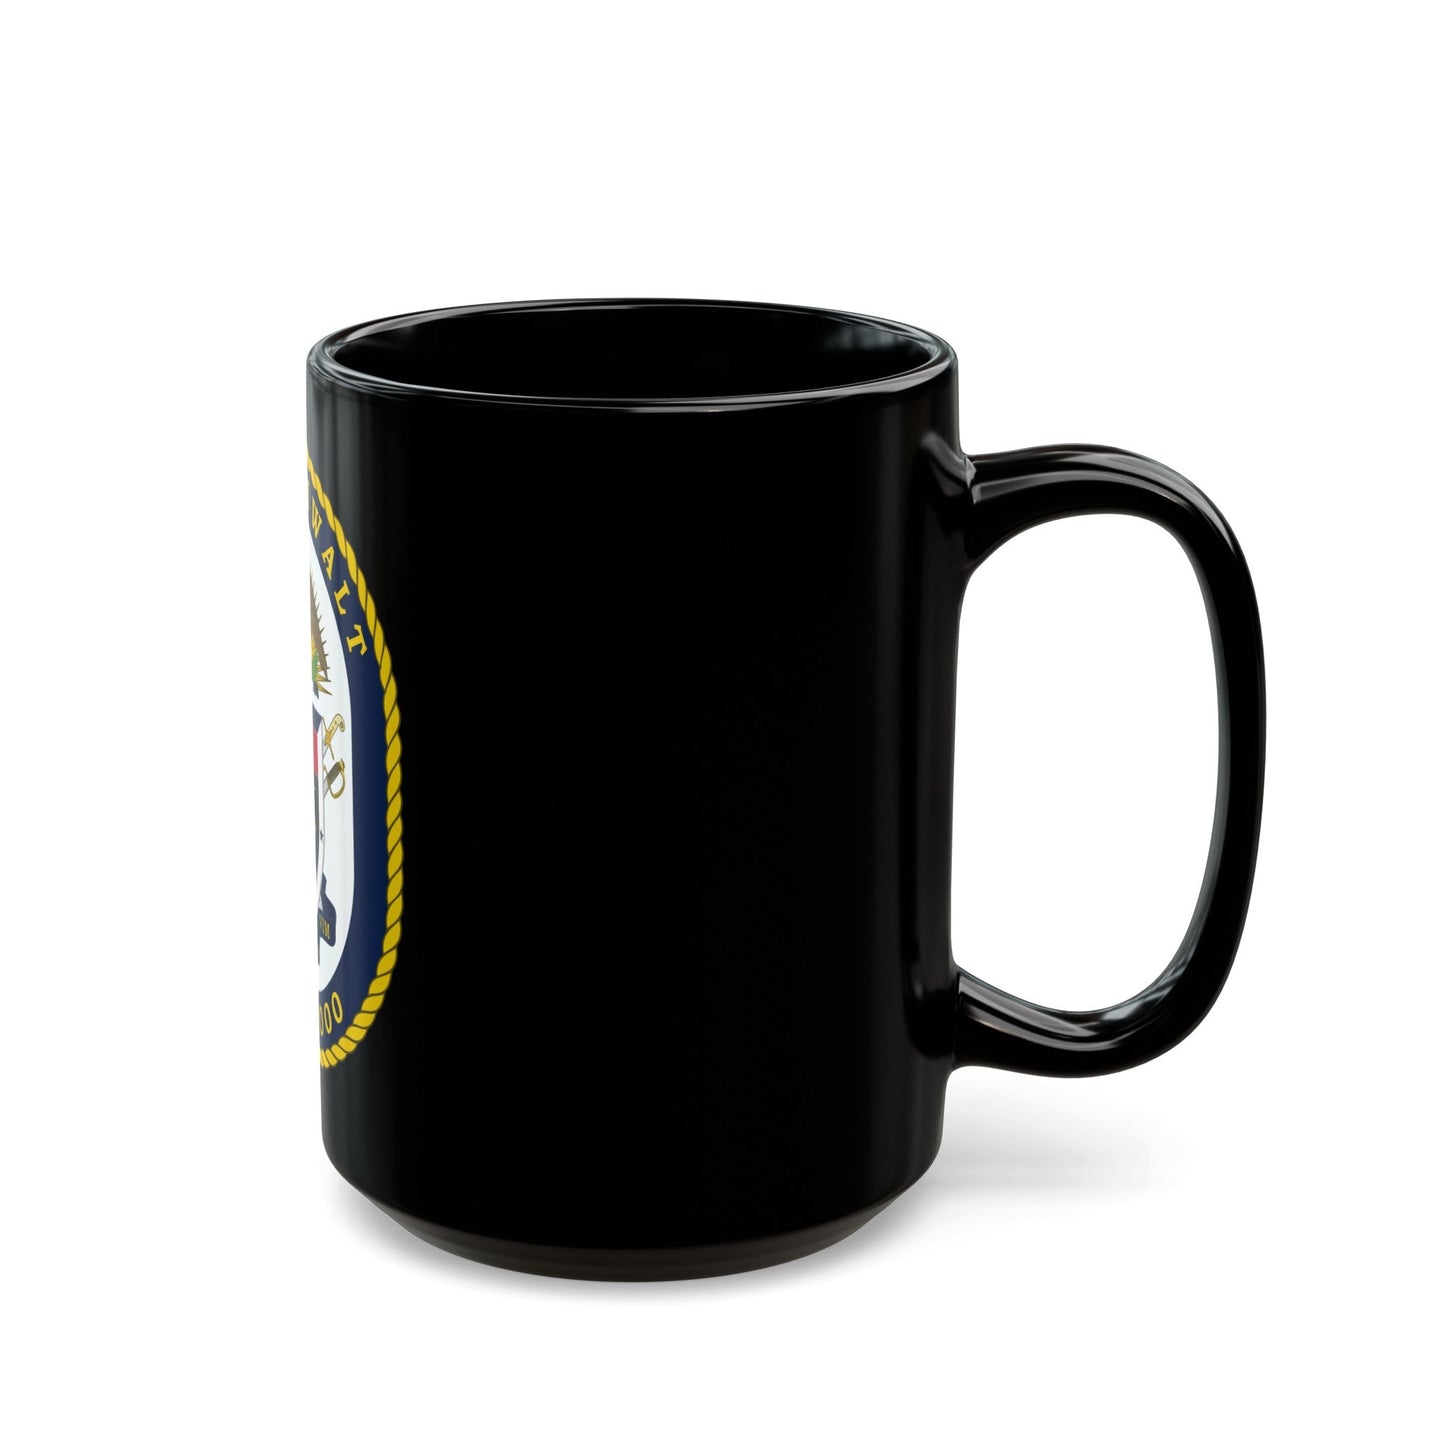 USS Zumwalt DDG 1000 Crest (U.S. Navy) Black Coffee Mug-The Sticker Space